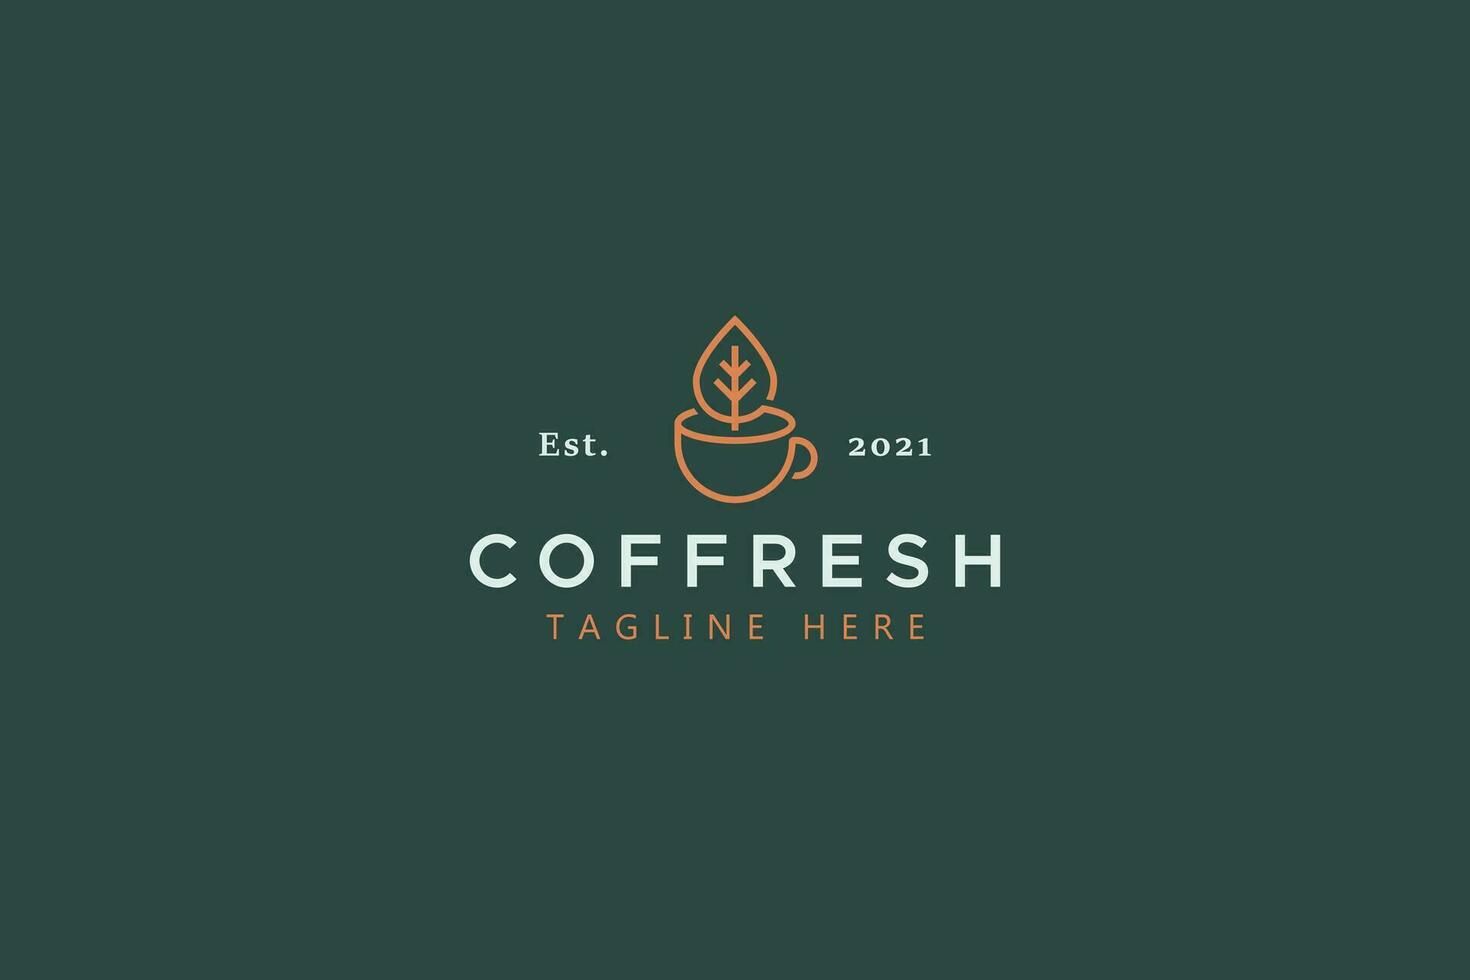 Original Fresh Coffee and Tea Traditional Creative Idea Logo Concept vector